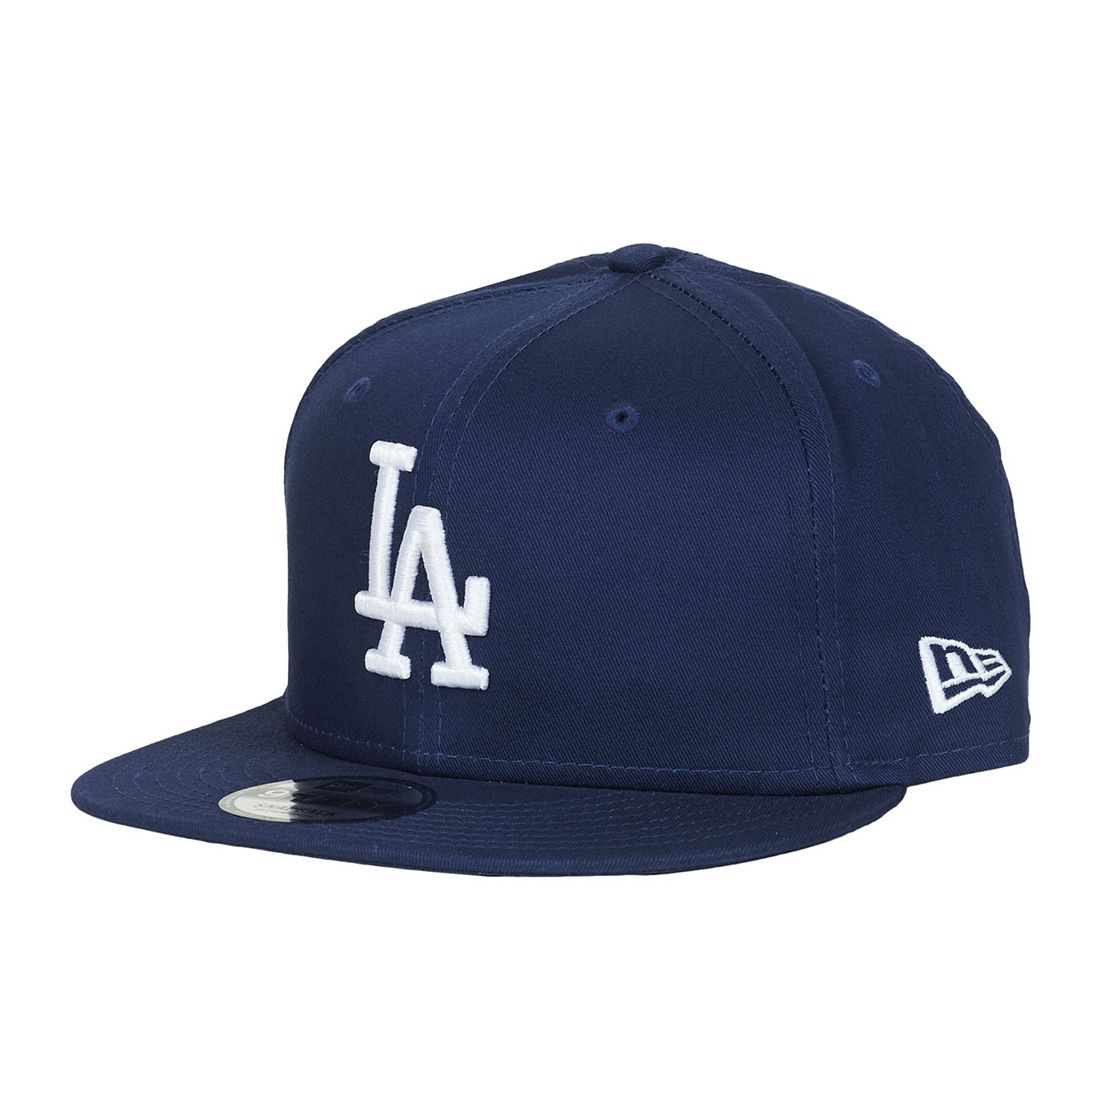 New Era Mlb La Dodgers Navy Men's Cap